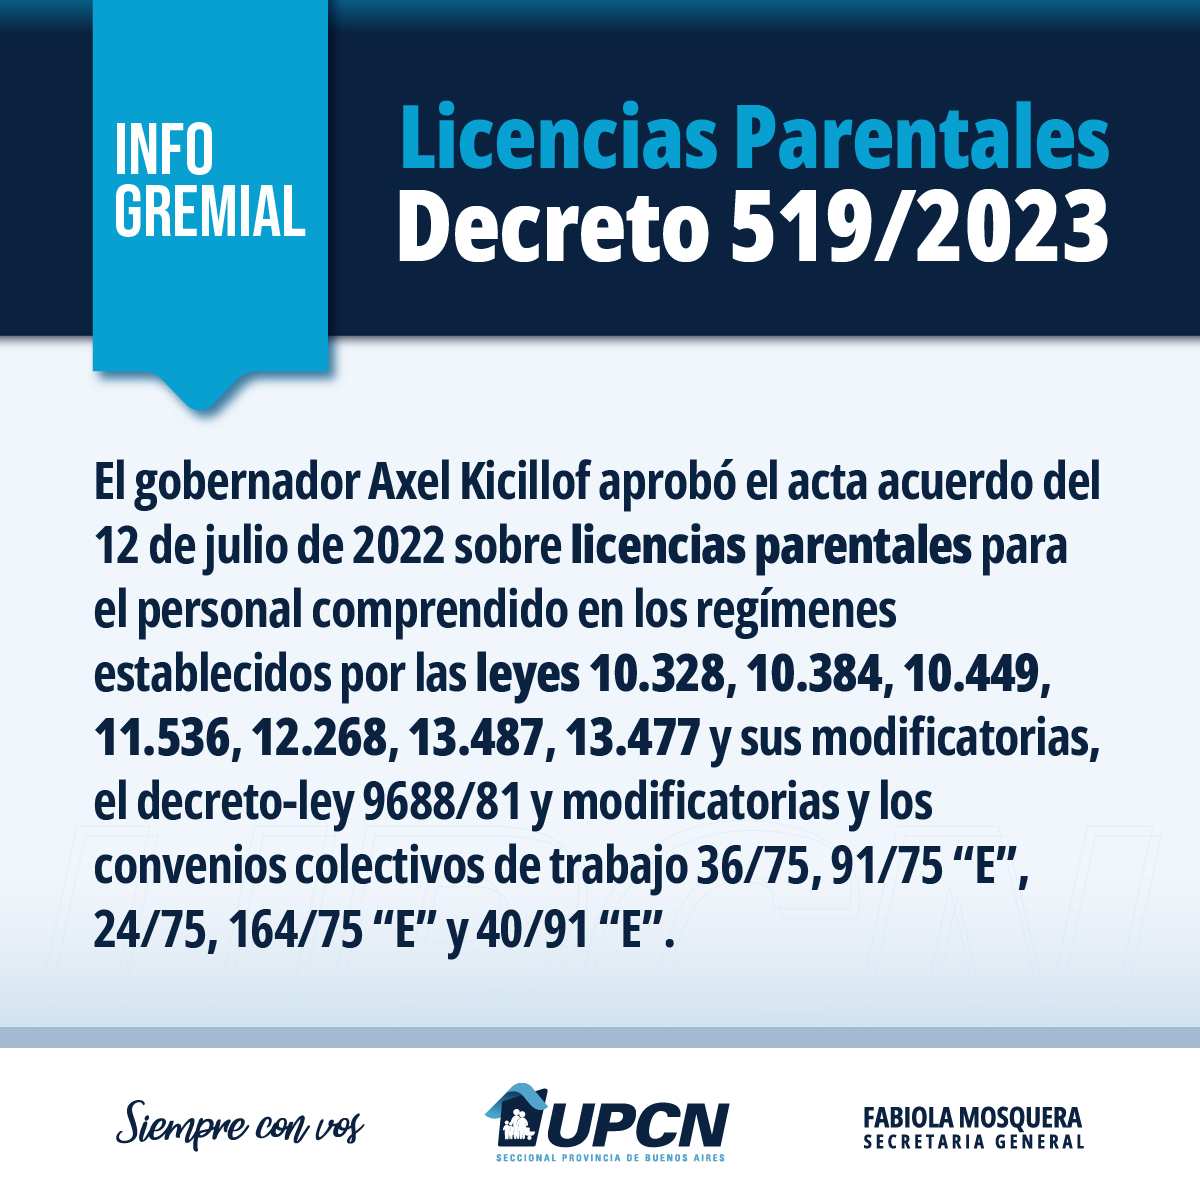 Licencias parentales: el gobernador Axel Kicillof aprobó el acta acuerdo firmado el pasado 12 de julio de 2022